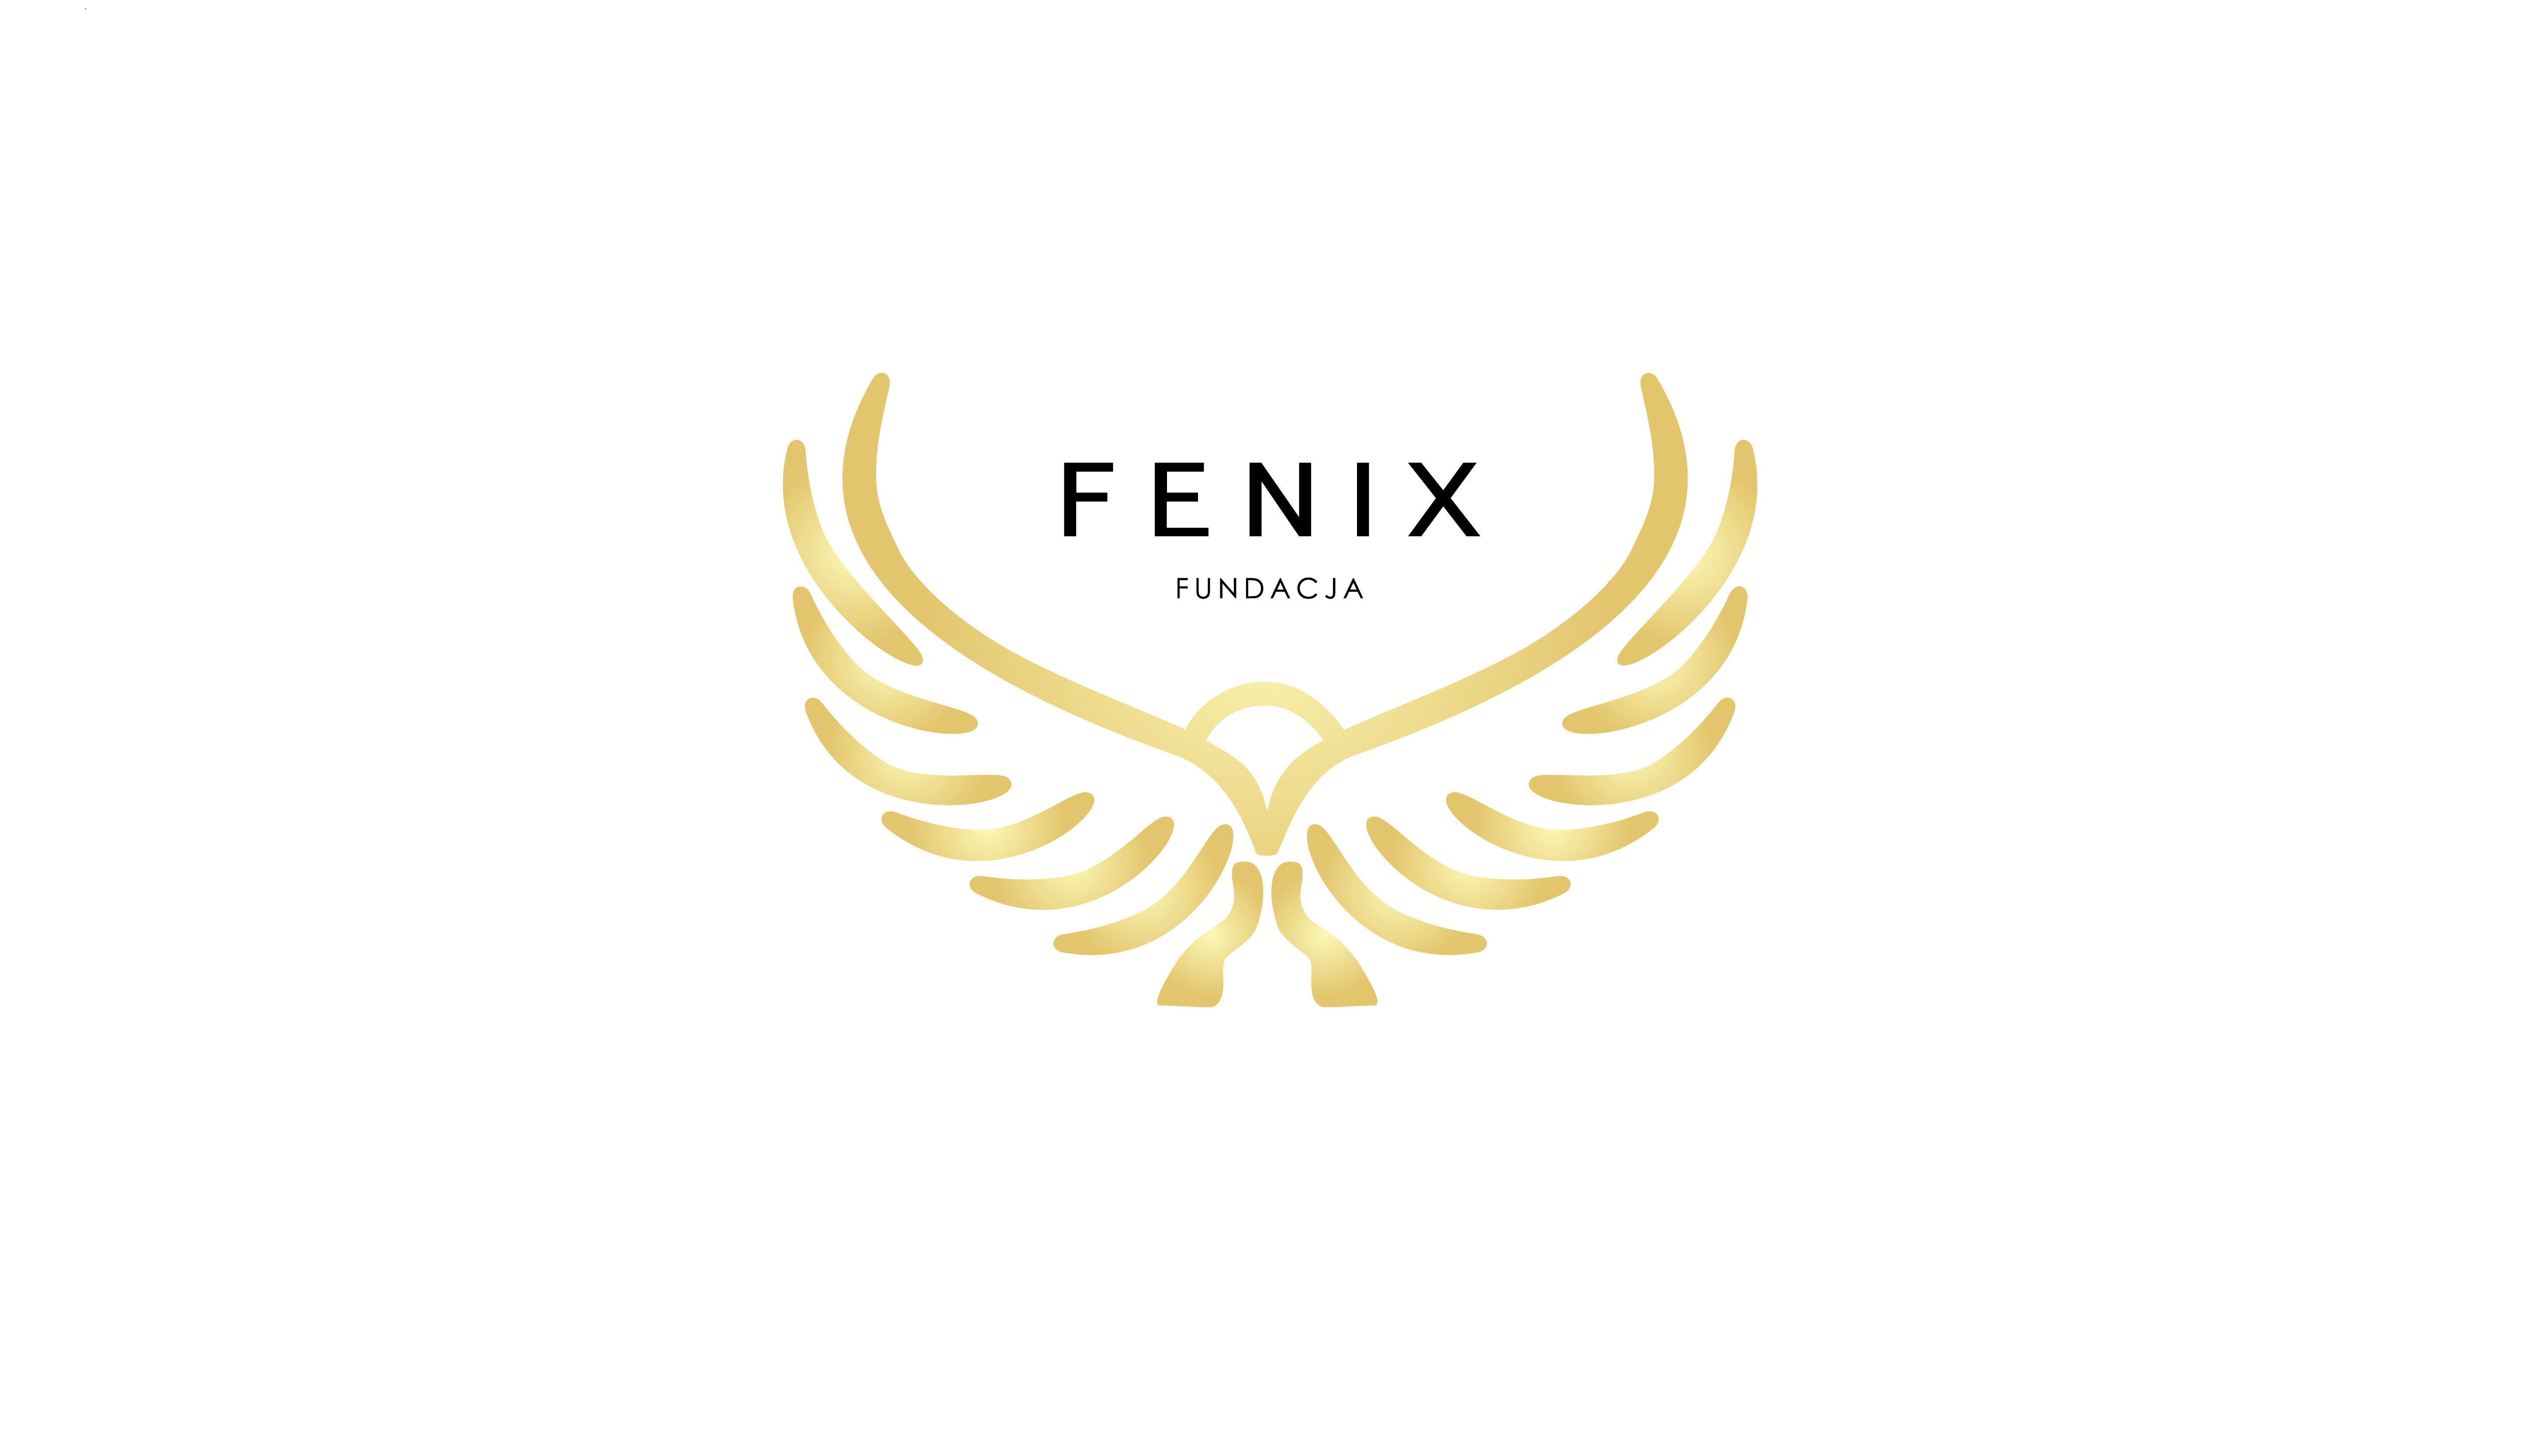 Fundacja Fenix